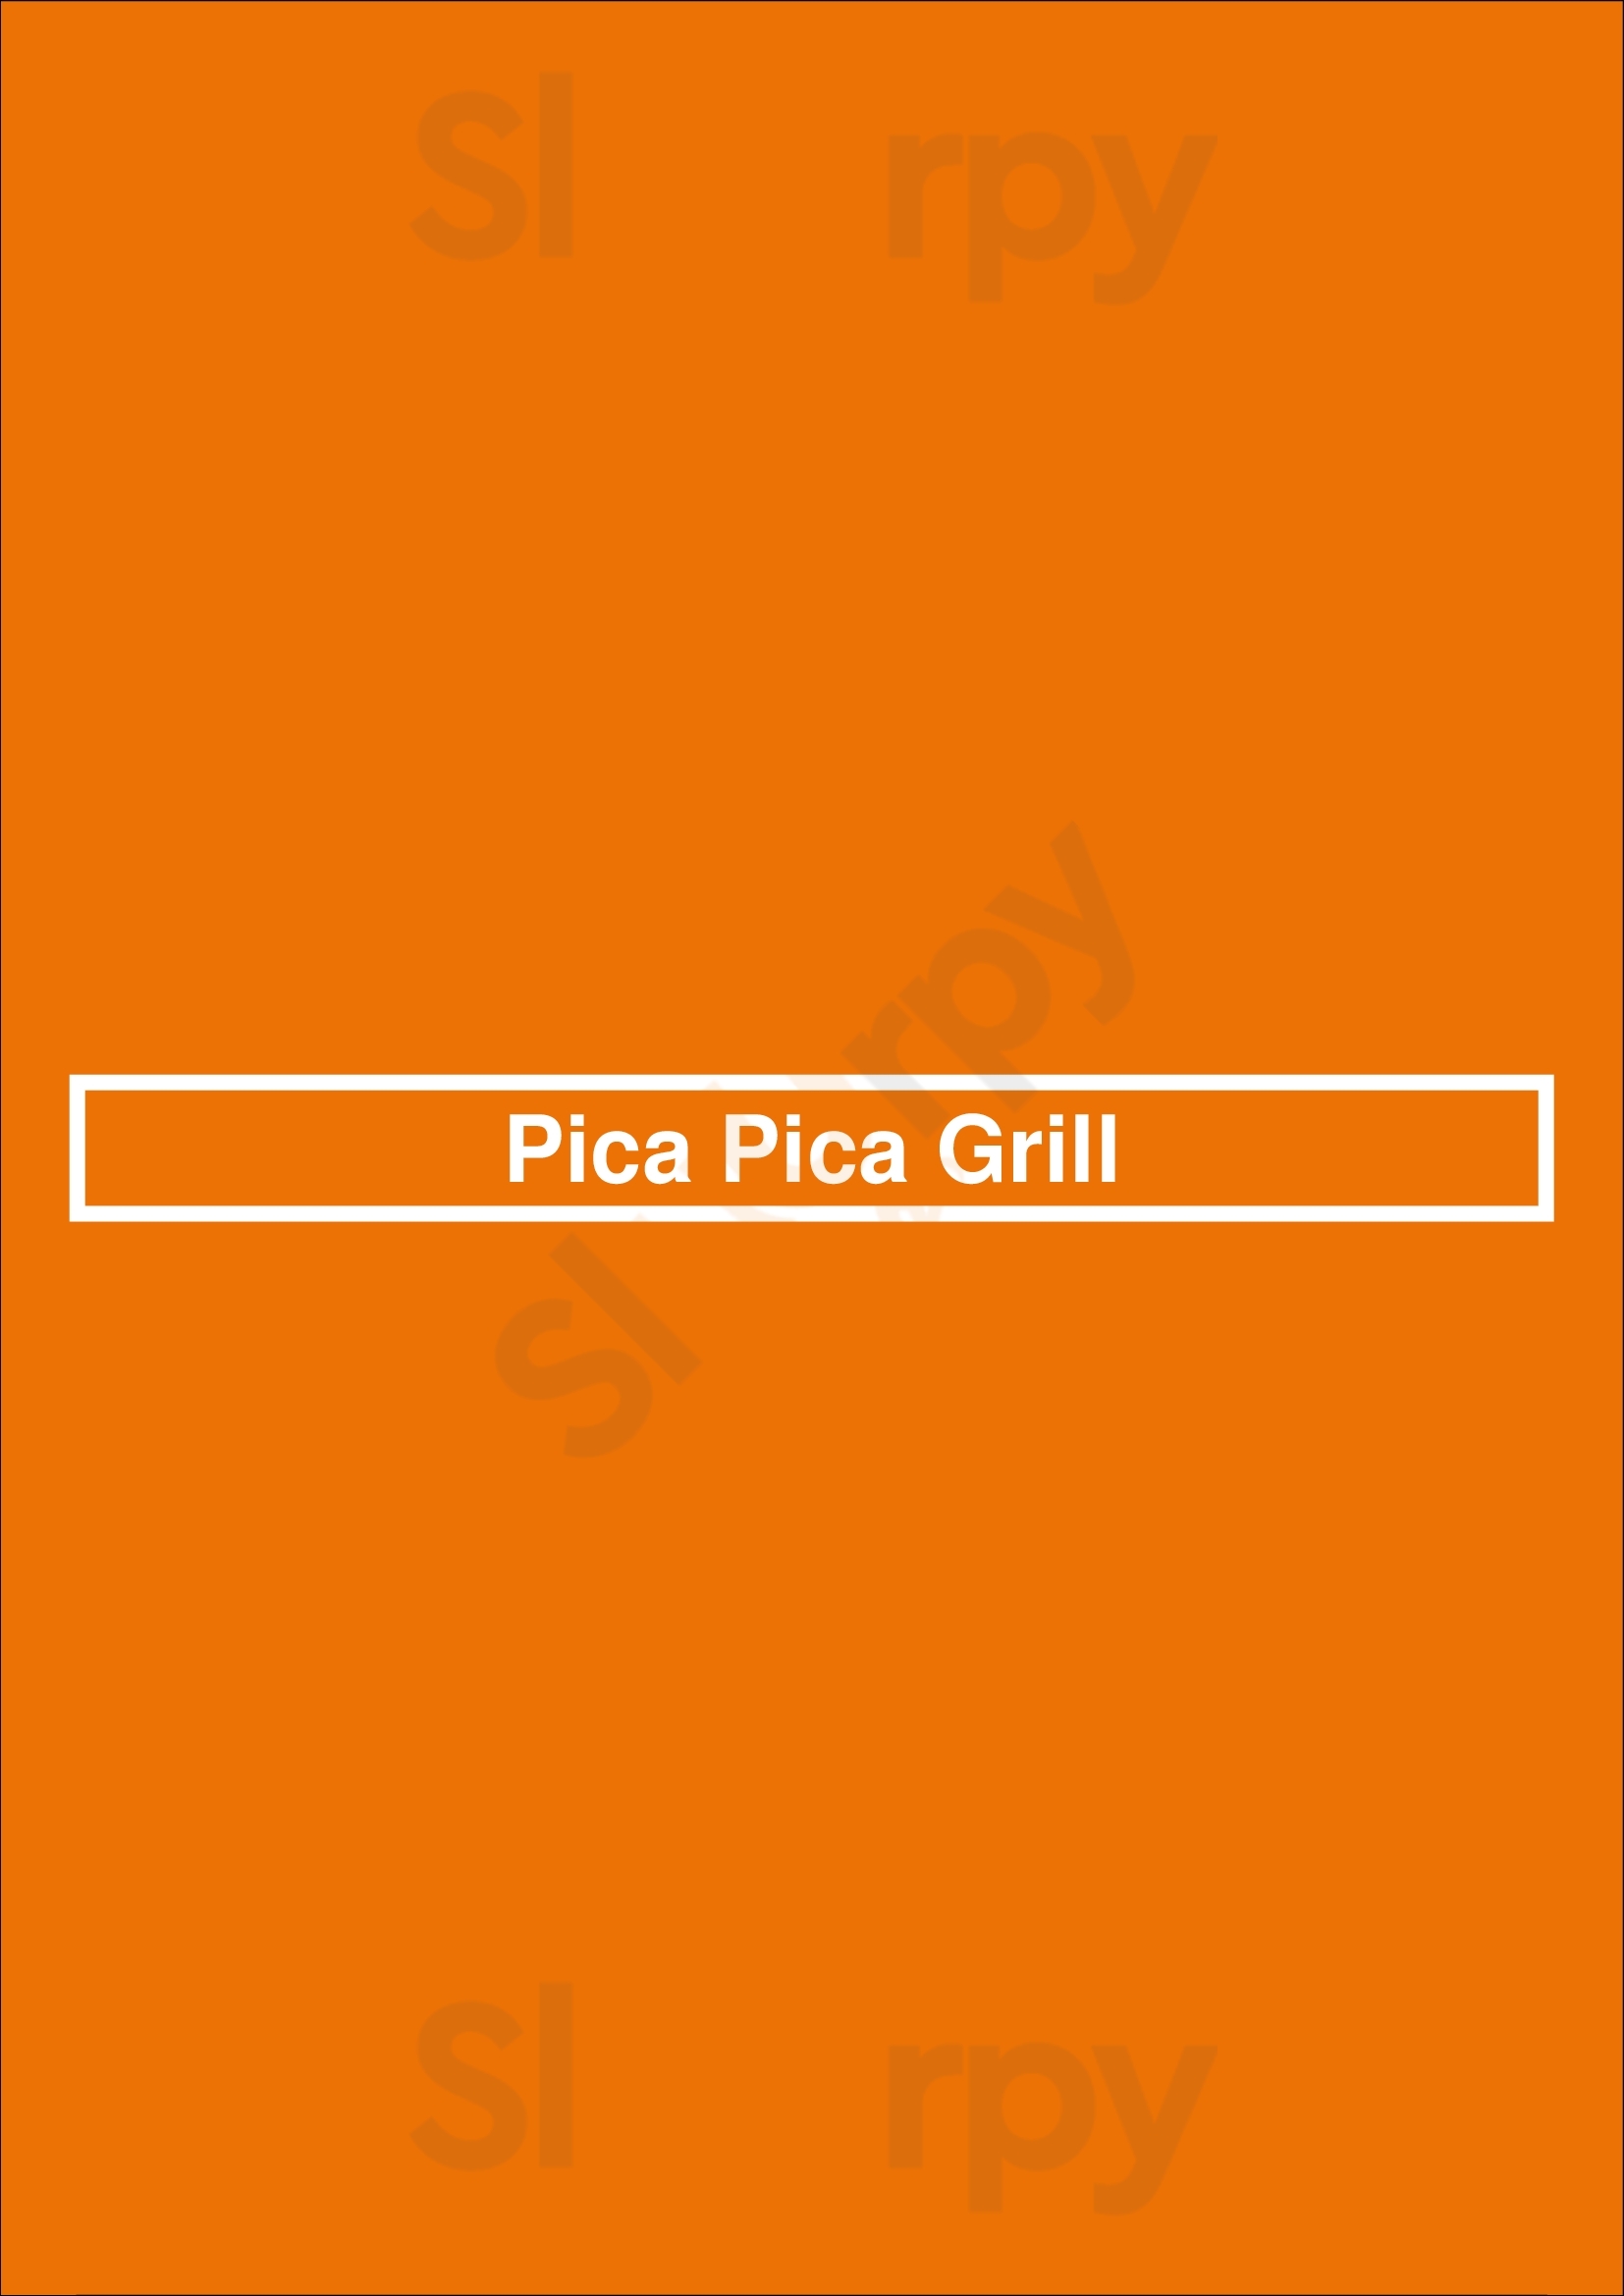 Pica Pica Grill Portland Menu - 1